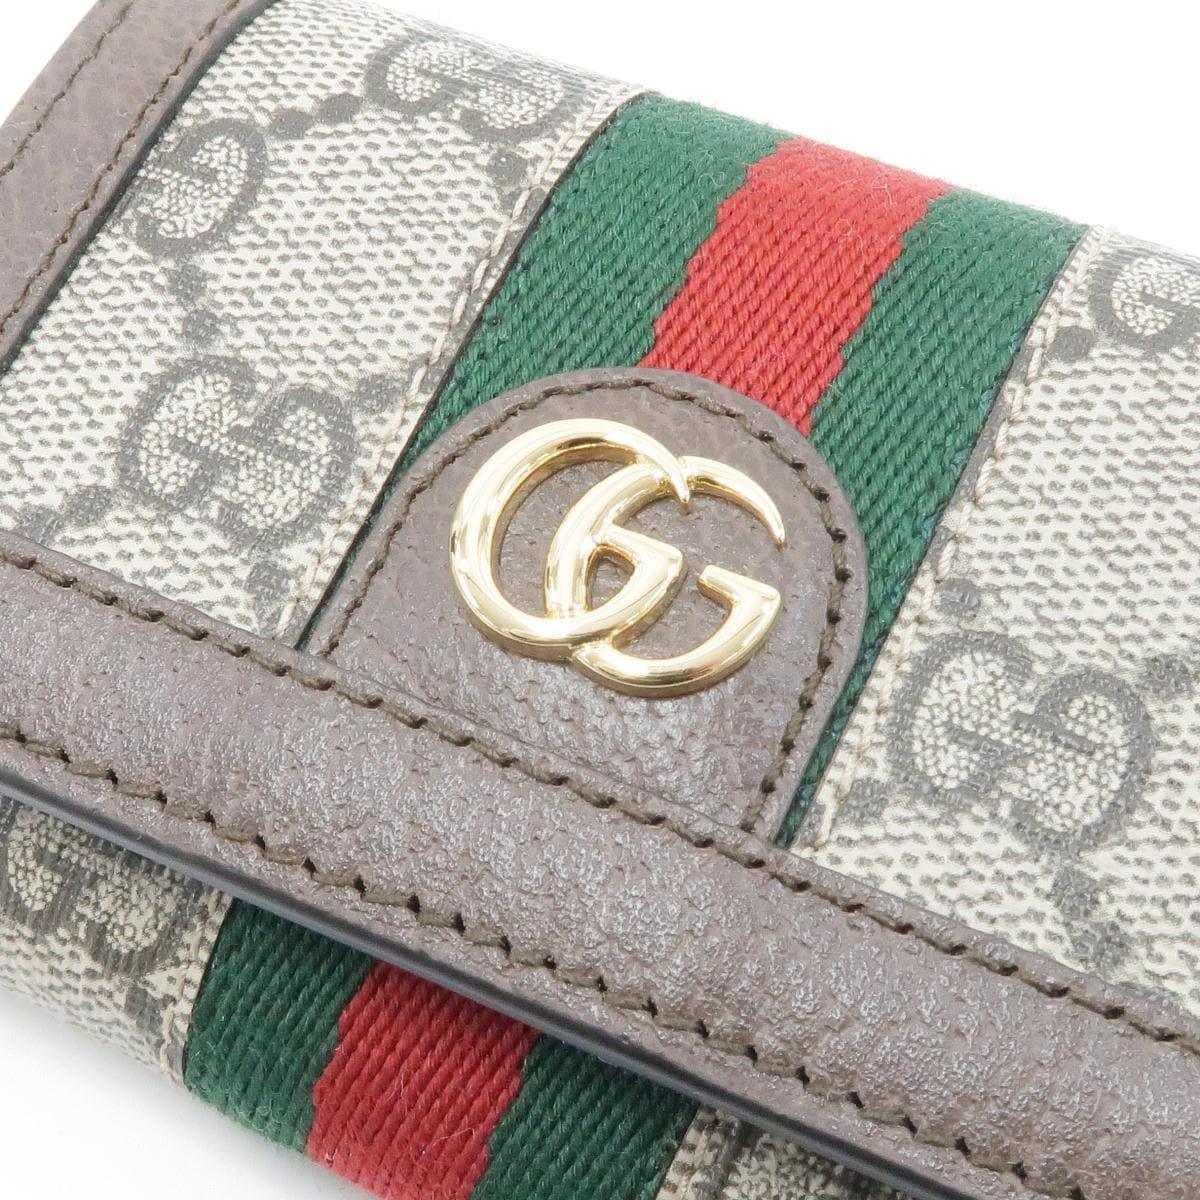 [新品] Gucci 钱包 644334 96IWG